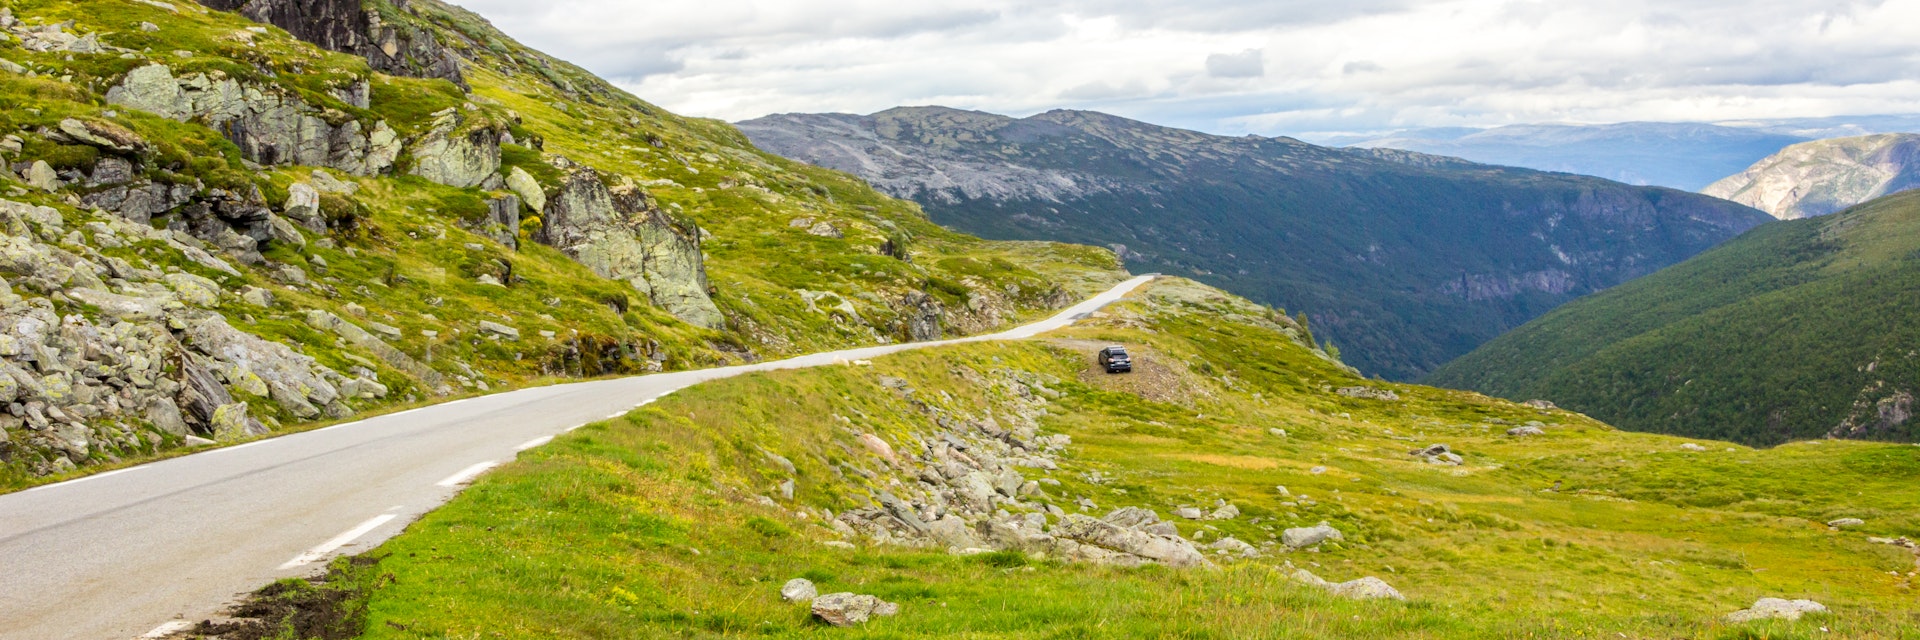 Aurlandsfjellet panoramic road in Norway.